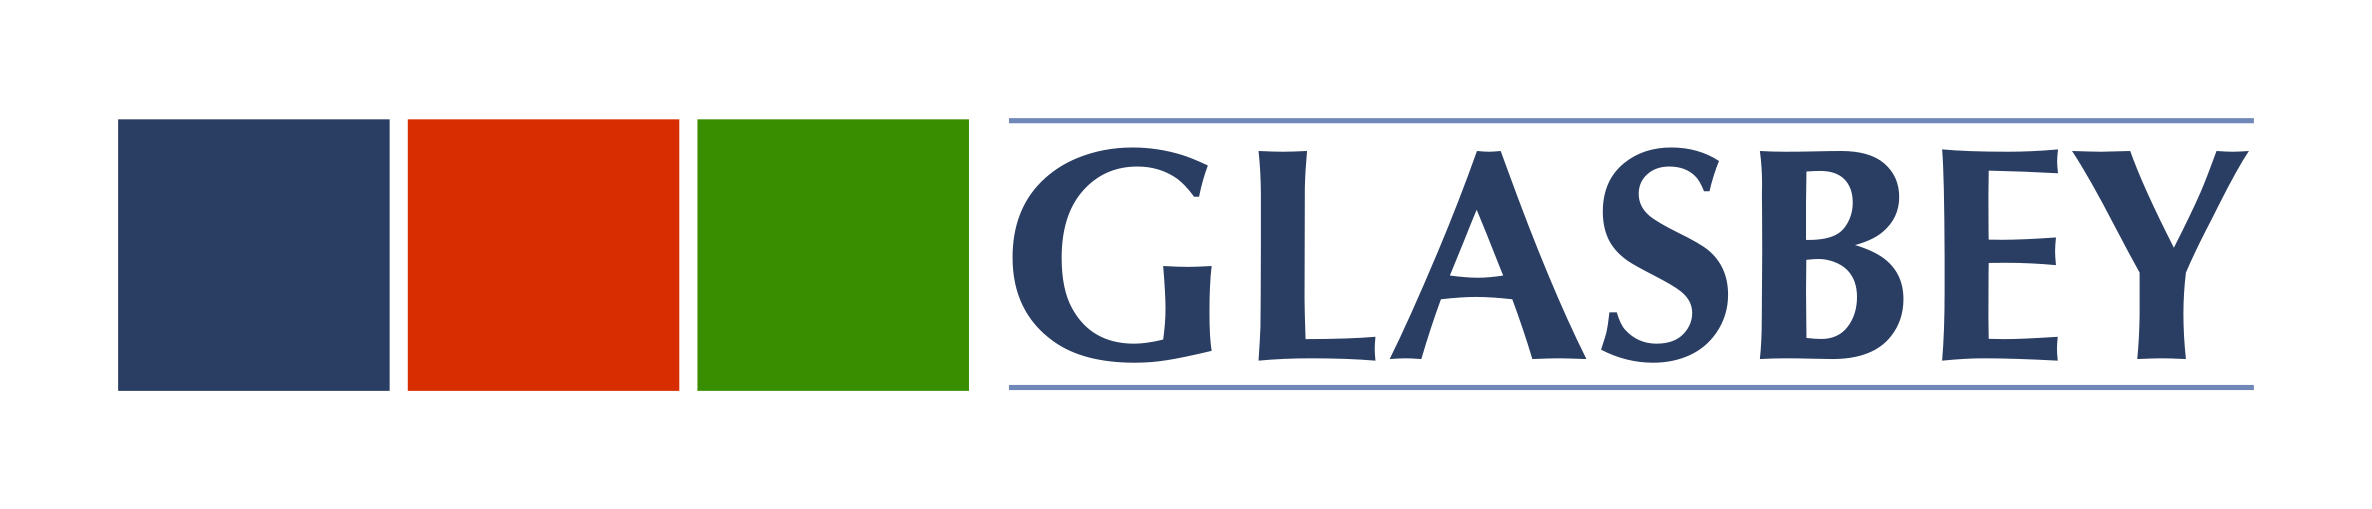 Glasbey logo